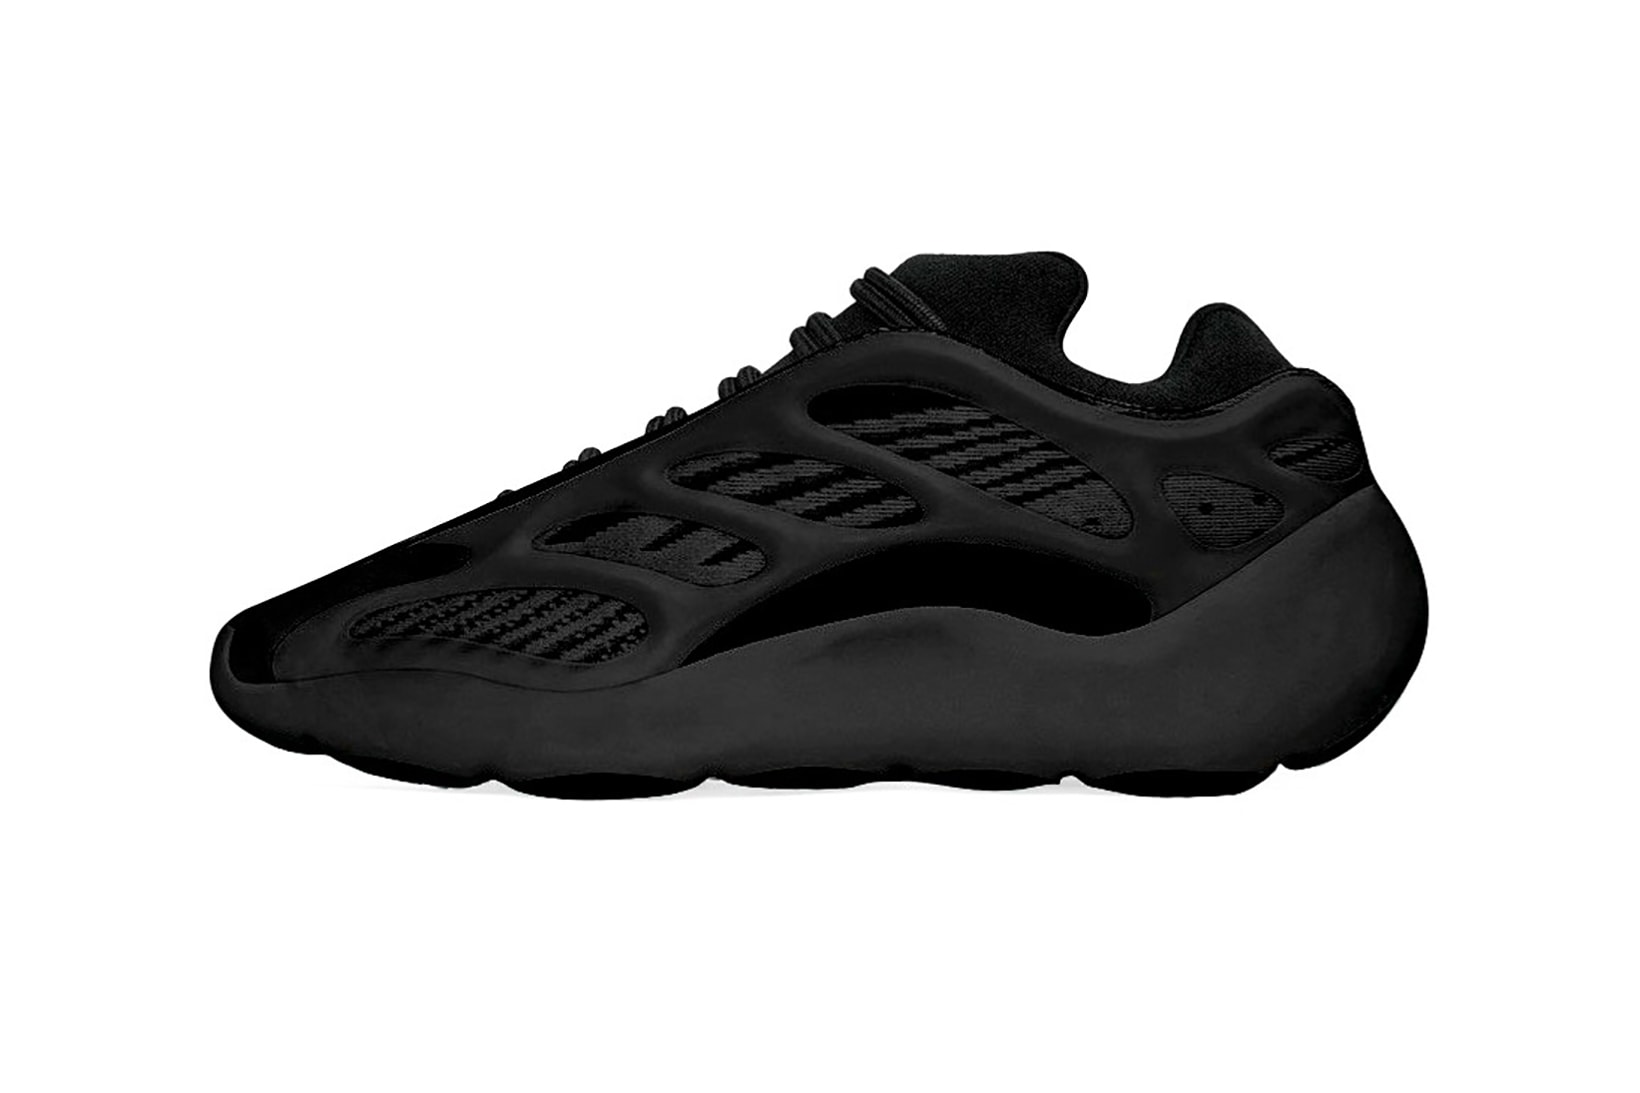 adidas kanye west yeezy 700 v3 black sneakers footwear shoes sneakerhead 